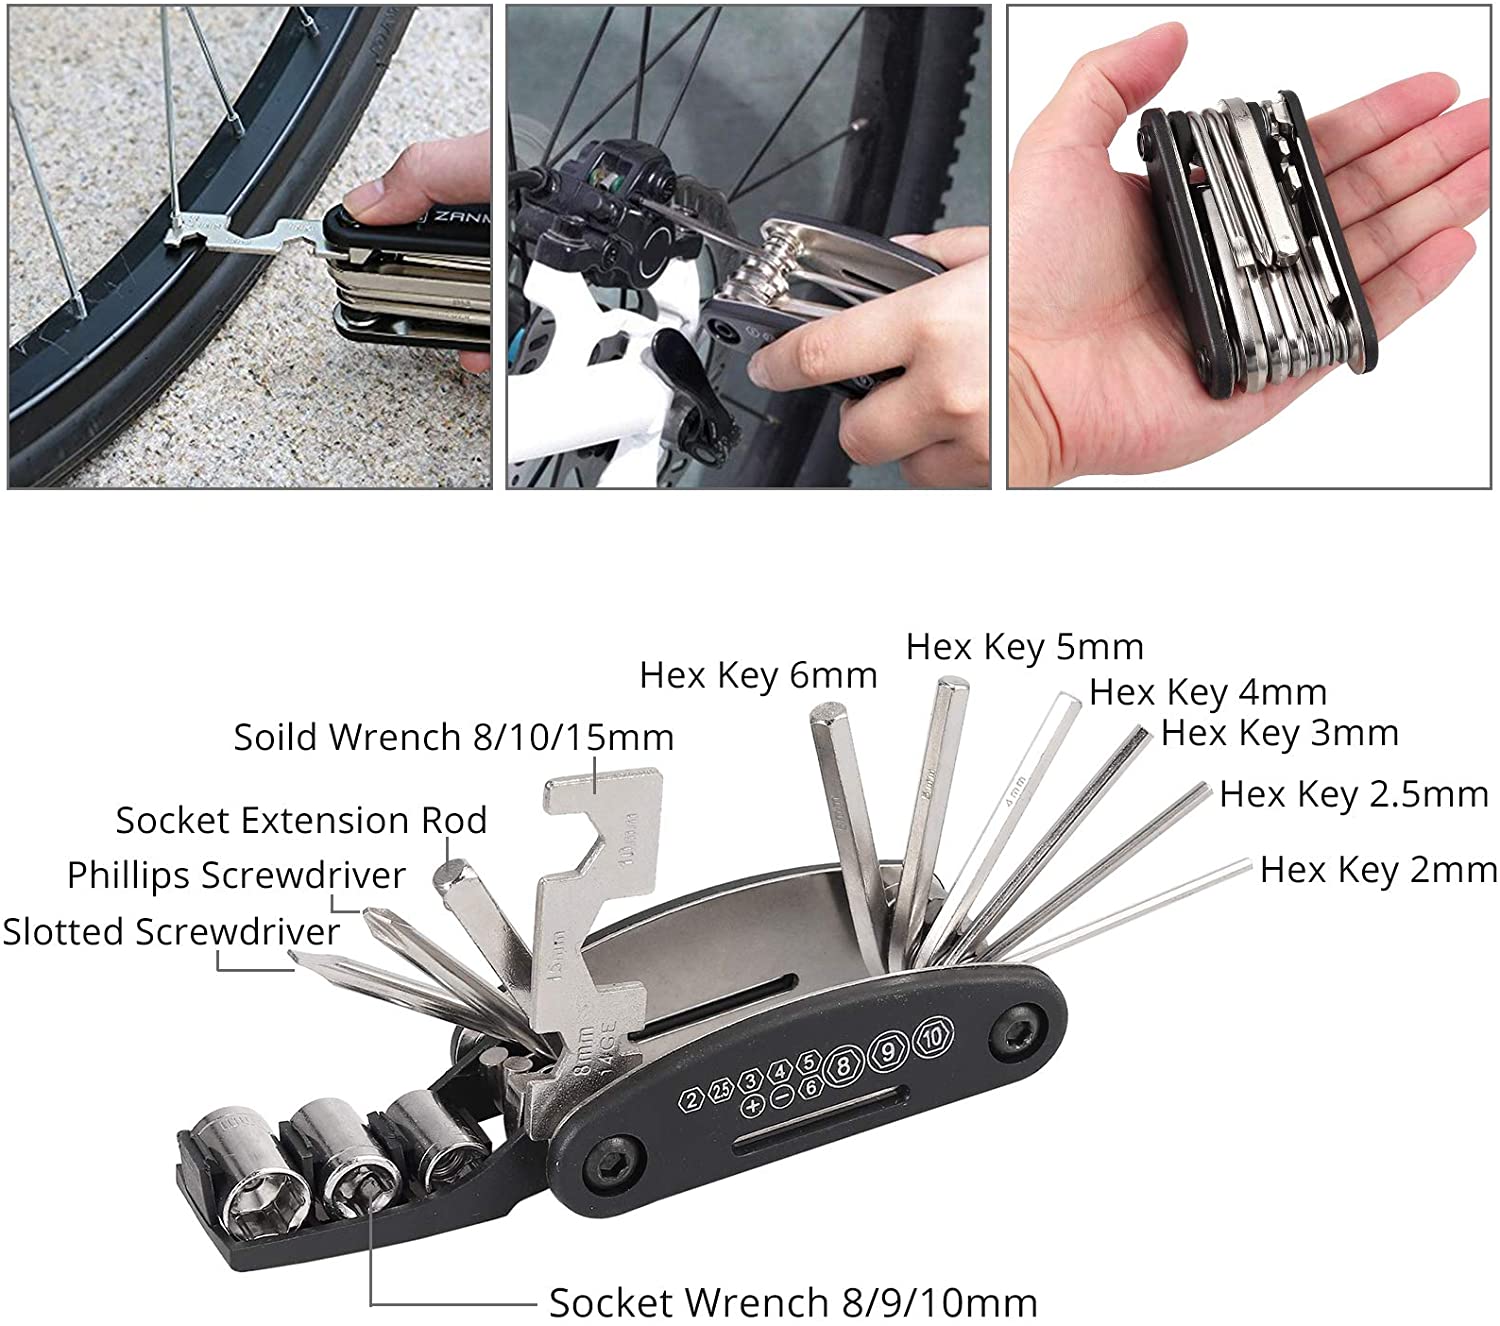 Kamtop 27 Packs Multifunction Bike Repair Tool Kits